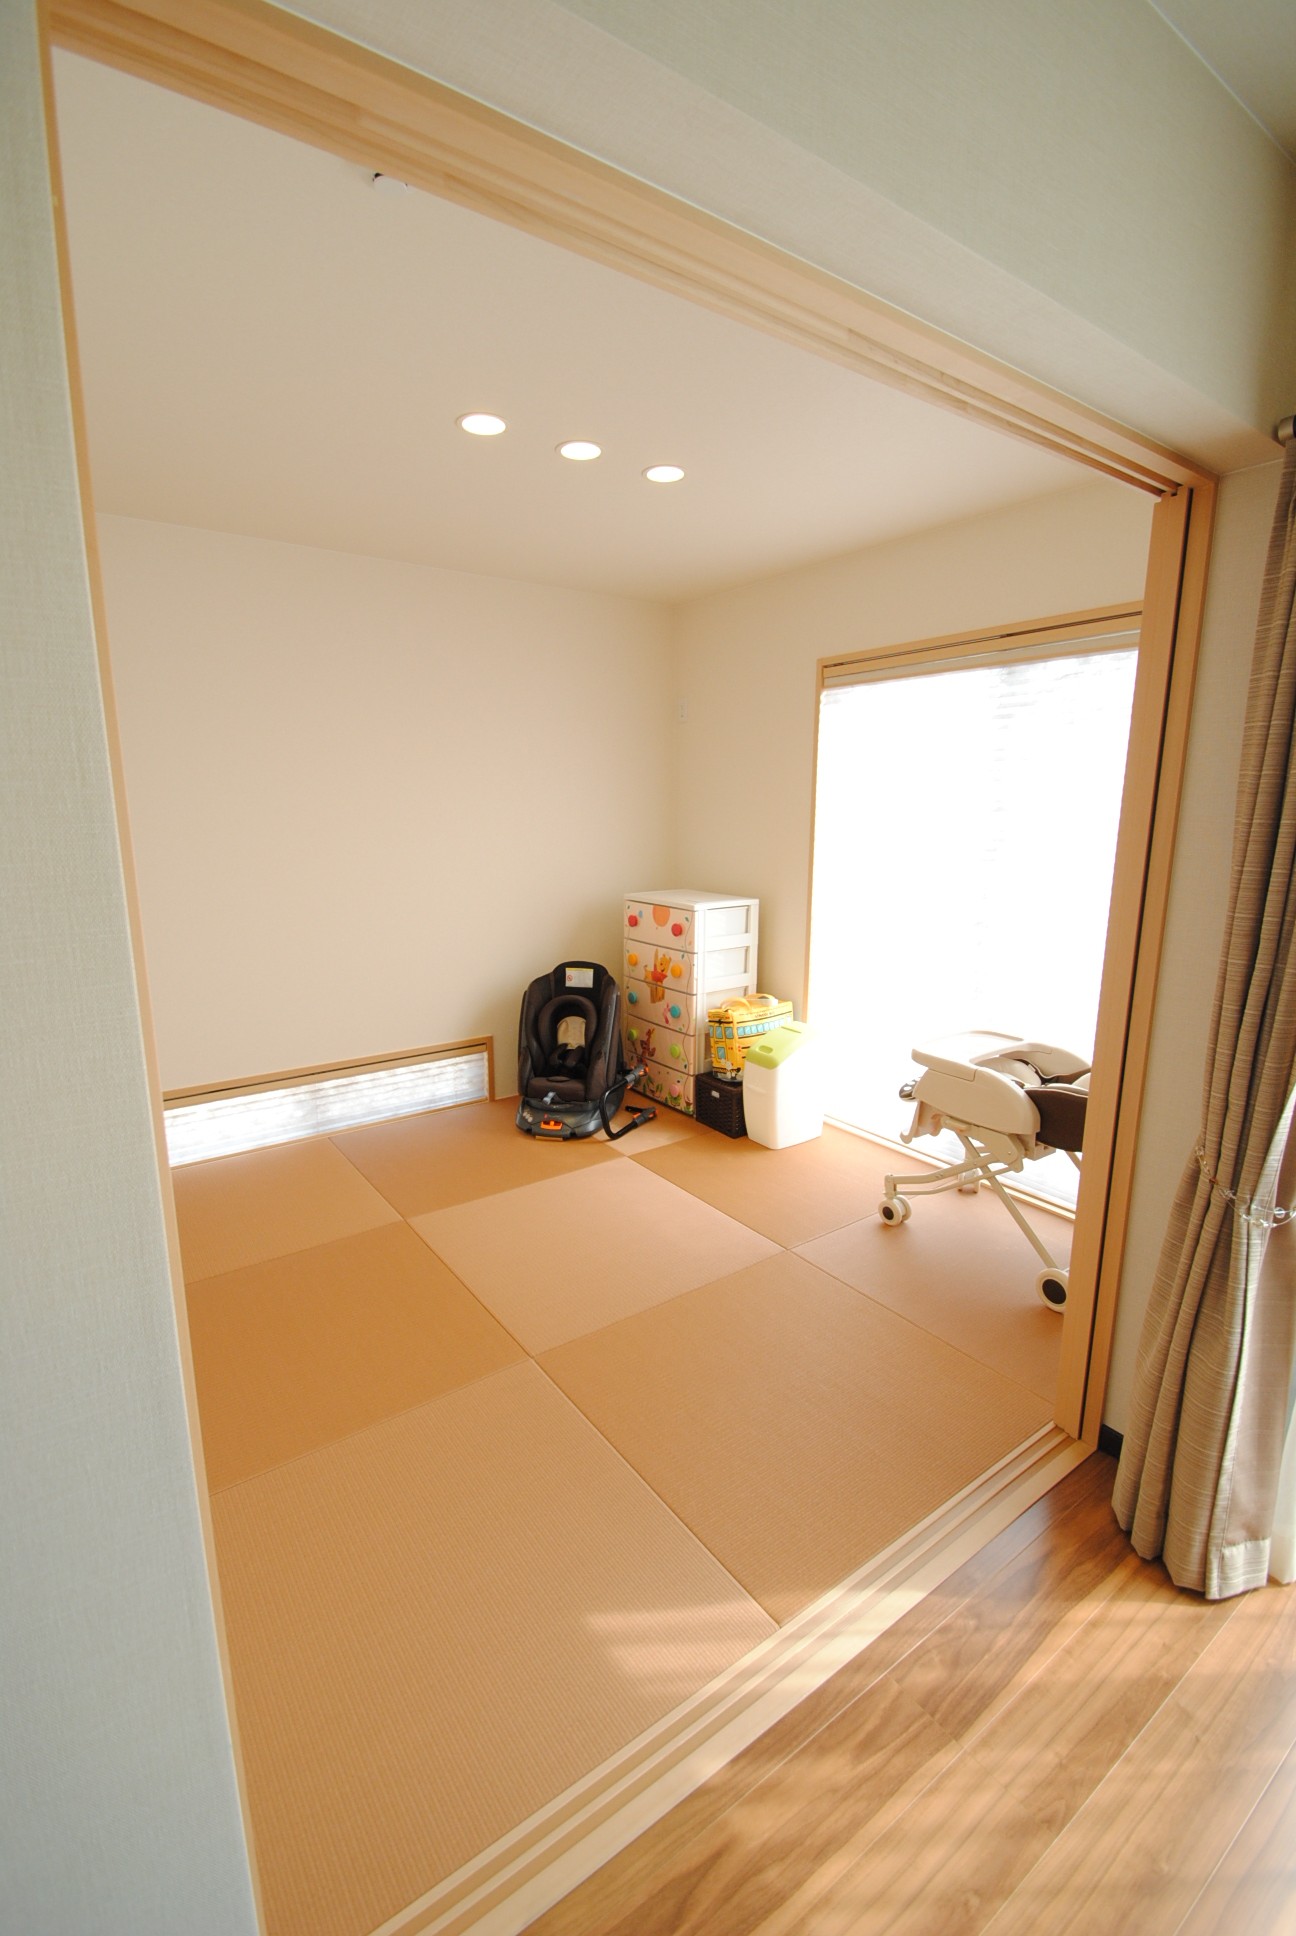 和室の畳は琉球畳風の縁なしのものに。LDKと調和するモダンな空間に仕上げてある